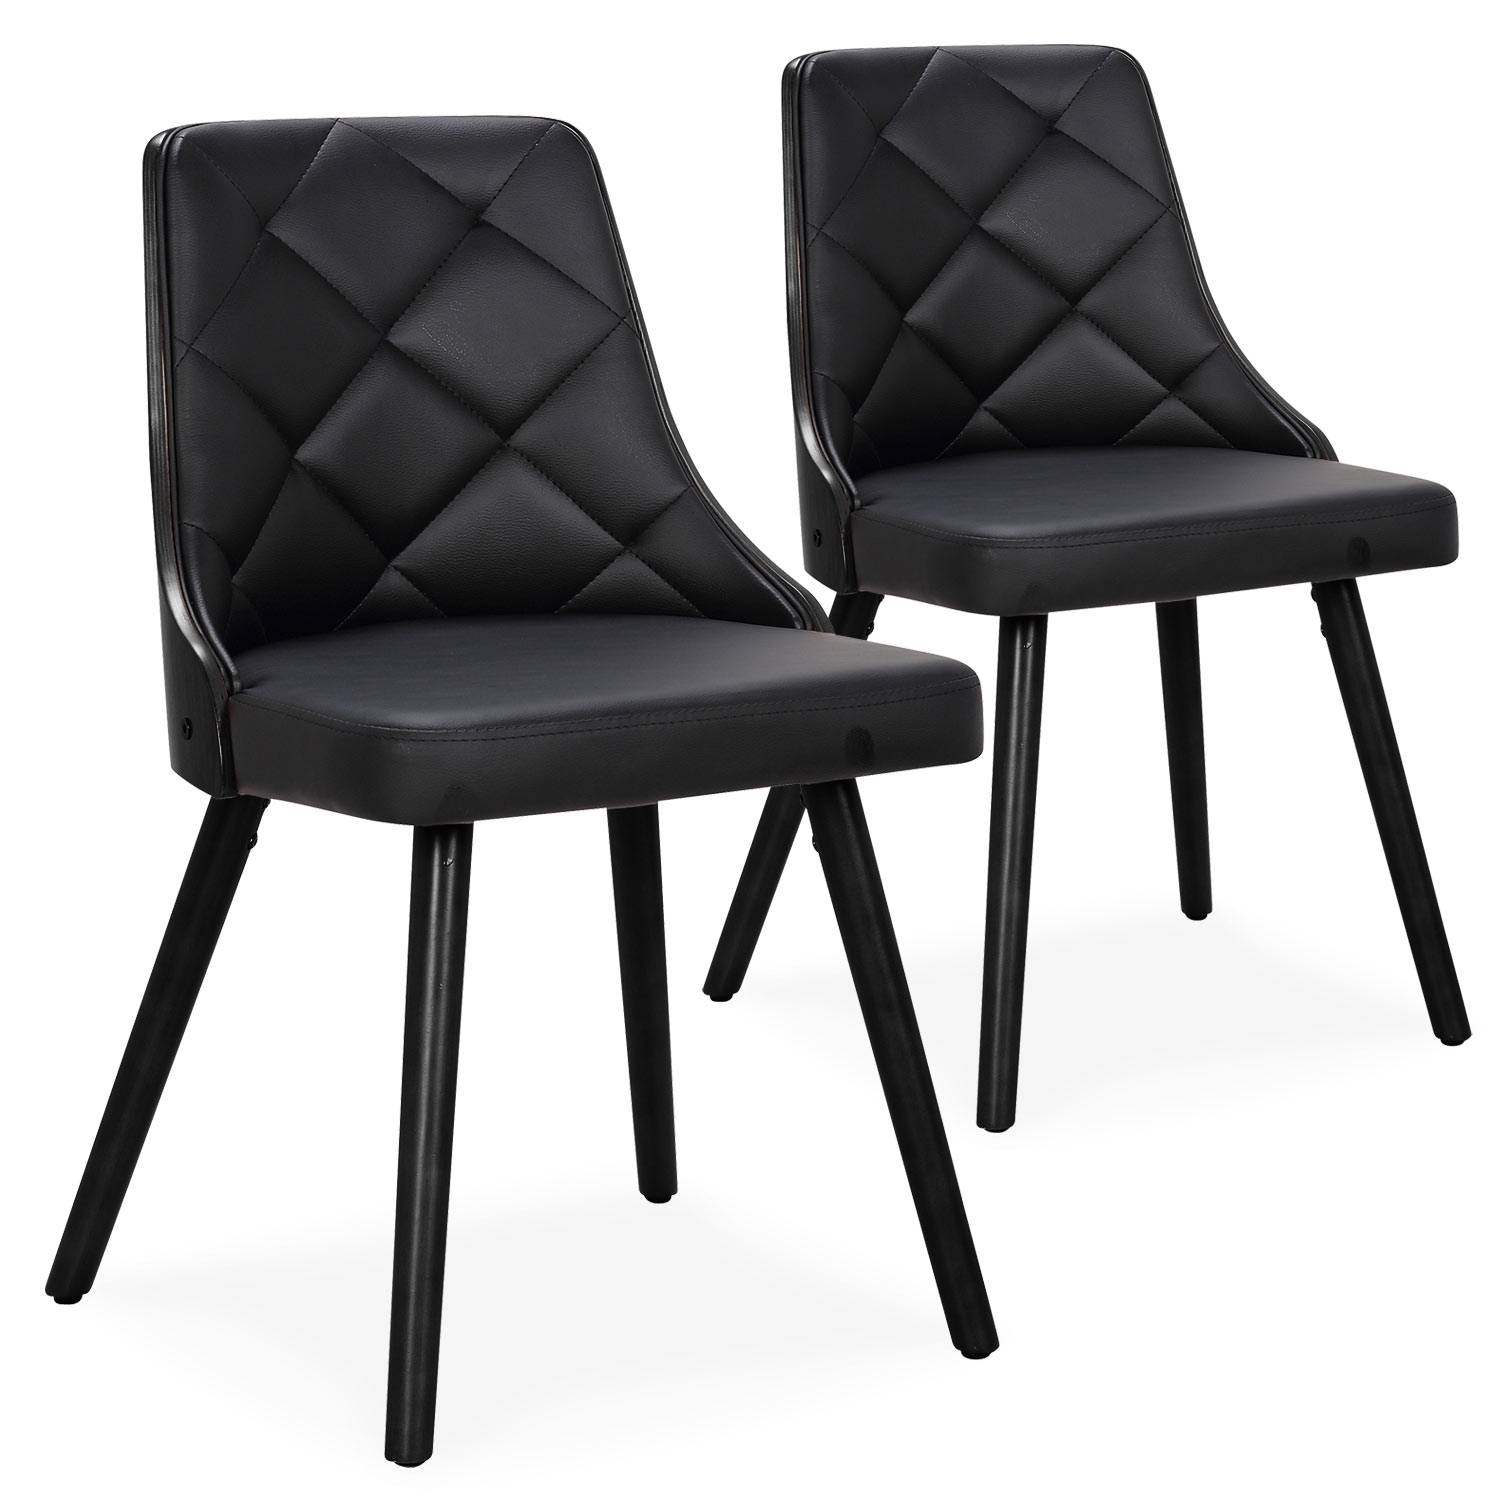 IDMarket - Lot de 6 chaises BONNIE noires pour salle à manger